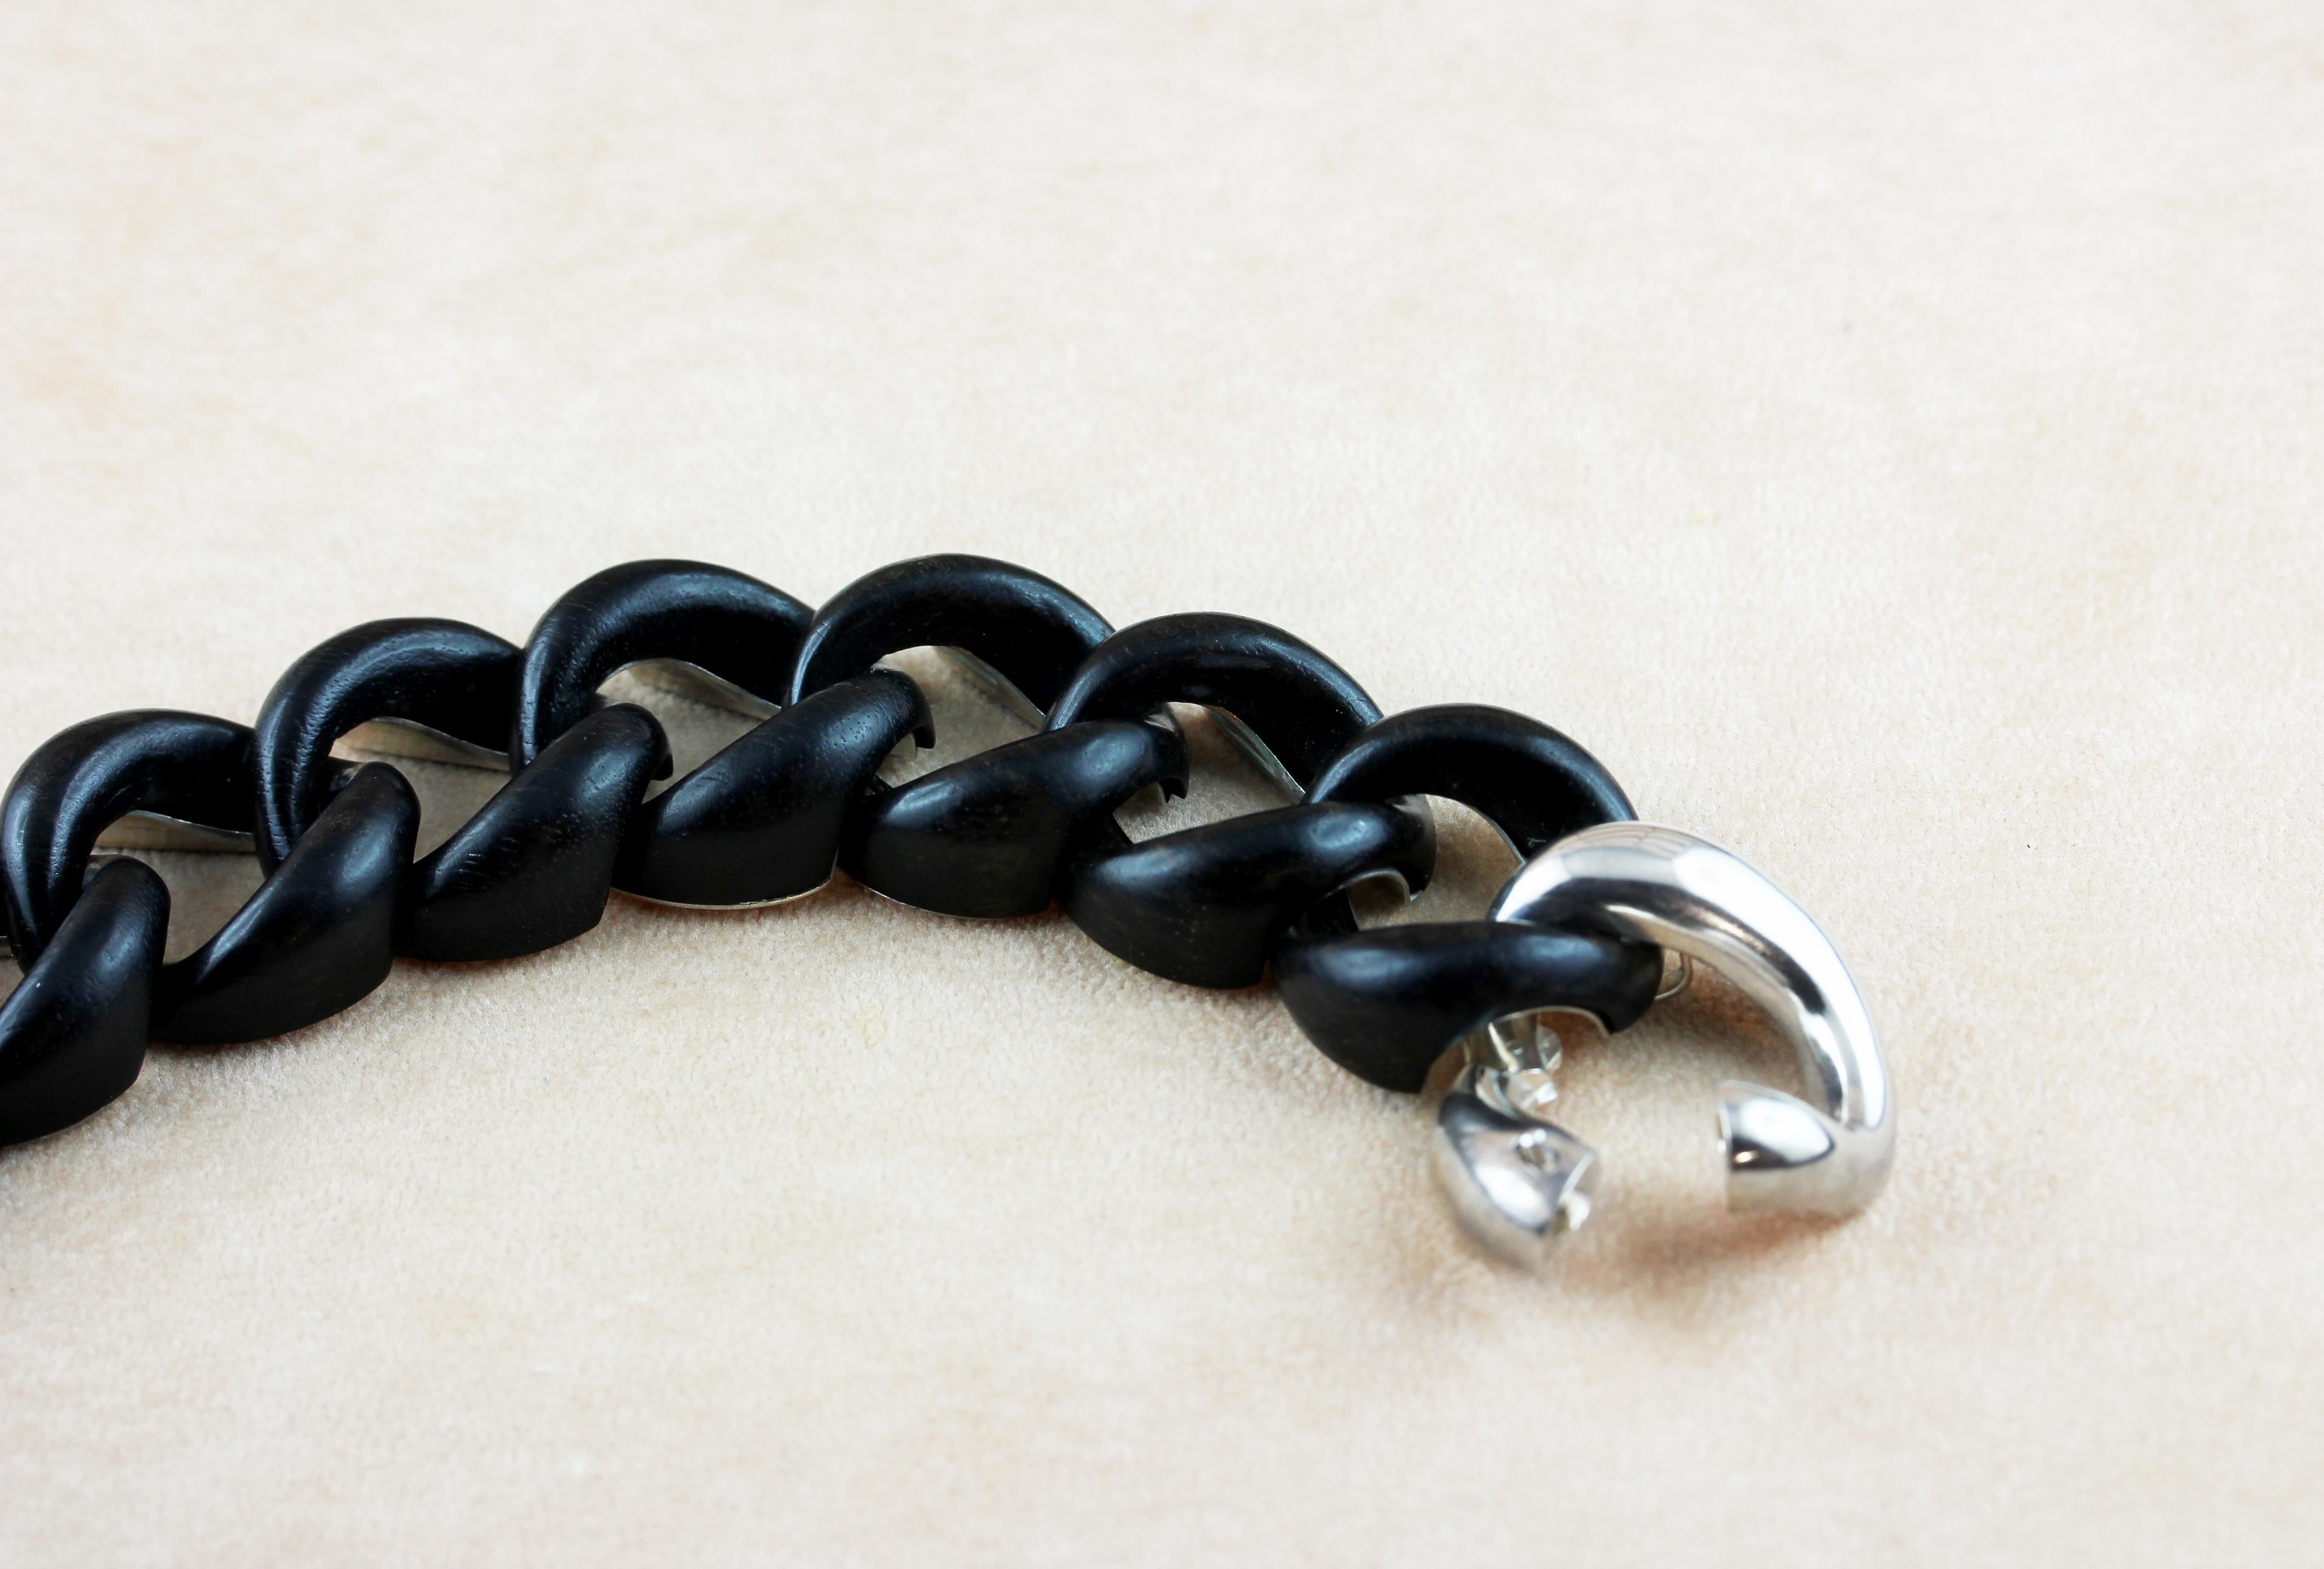 Dans cet élégant bracelet groumette réalisé en ébène,  les anneaux en bois noir créent un mélange élégant de sophistication et d'allure contemporaine.
Tout le dos du bracelet est en argent sterling 925 comme les fermoirs.
 
Dimensions :
            